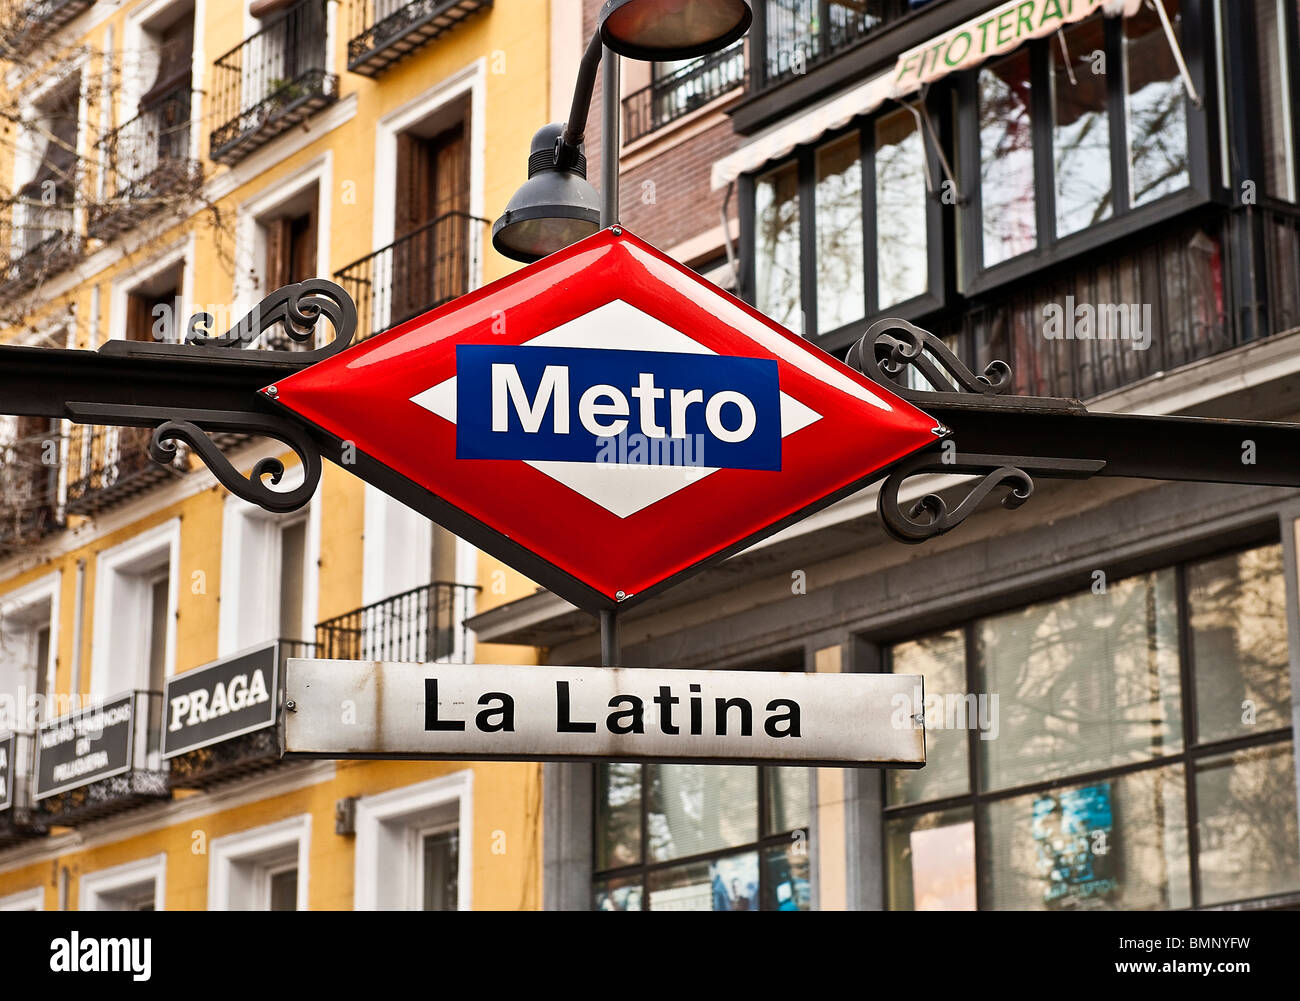 La station de métro La Latina, Madrid, Espagne Banque D'Images